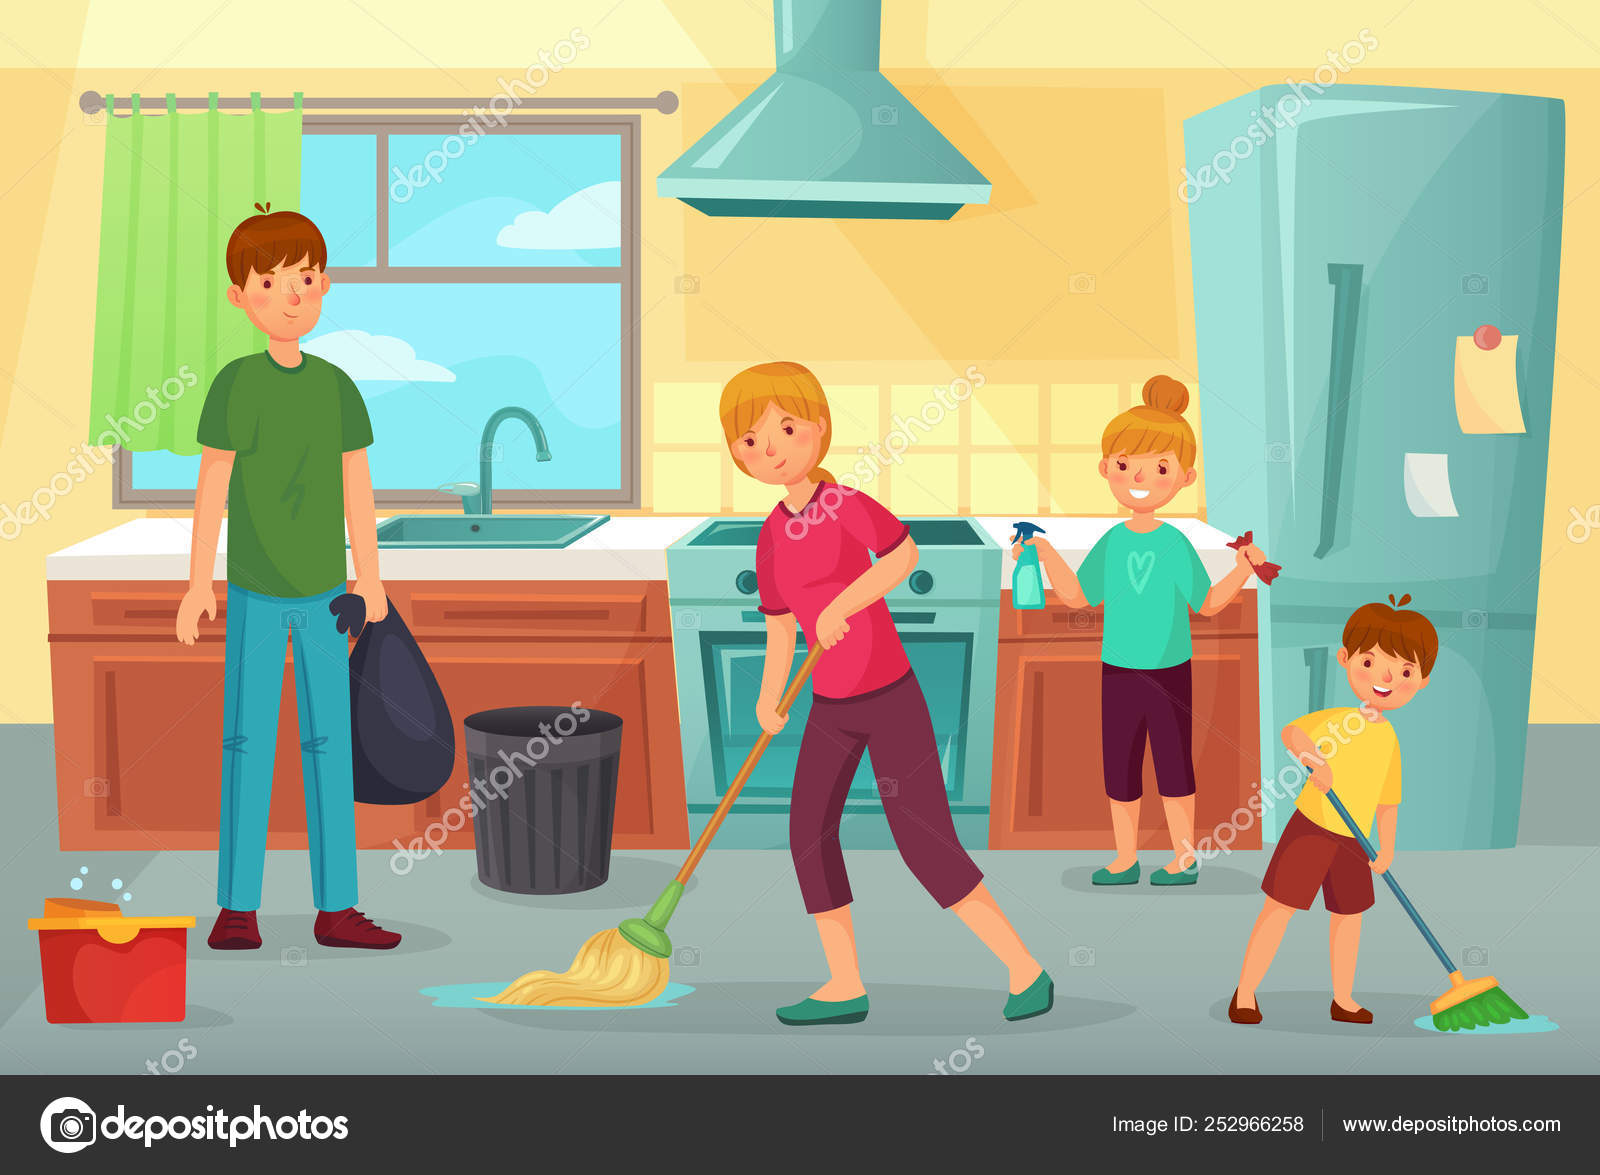 Detergente de limpieza y trapeador en el piso de una sala de estar en un  hogar